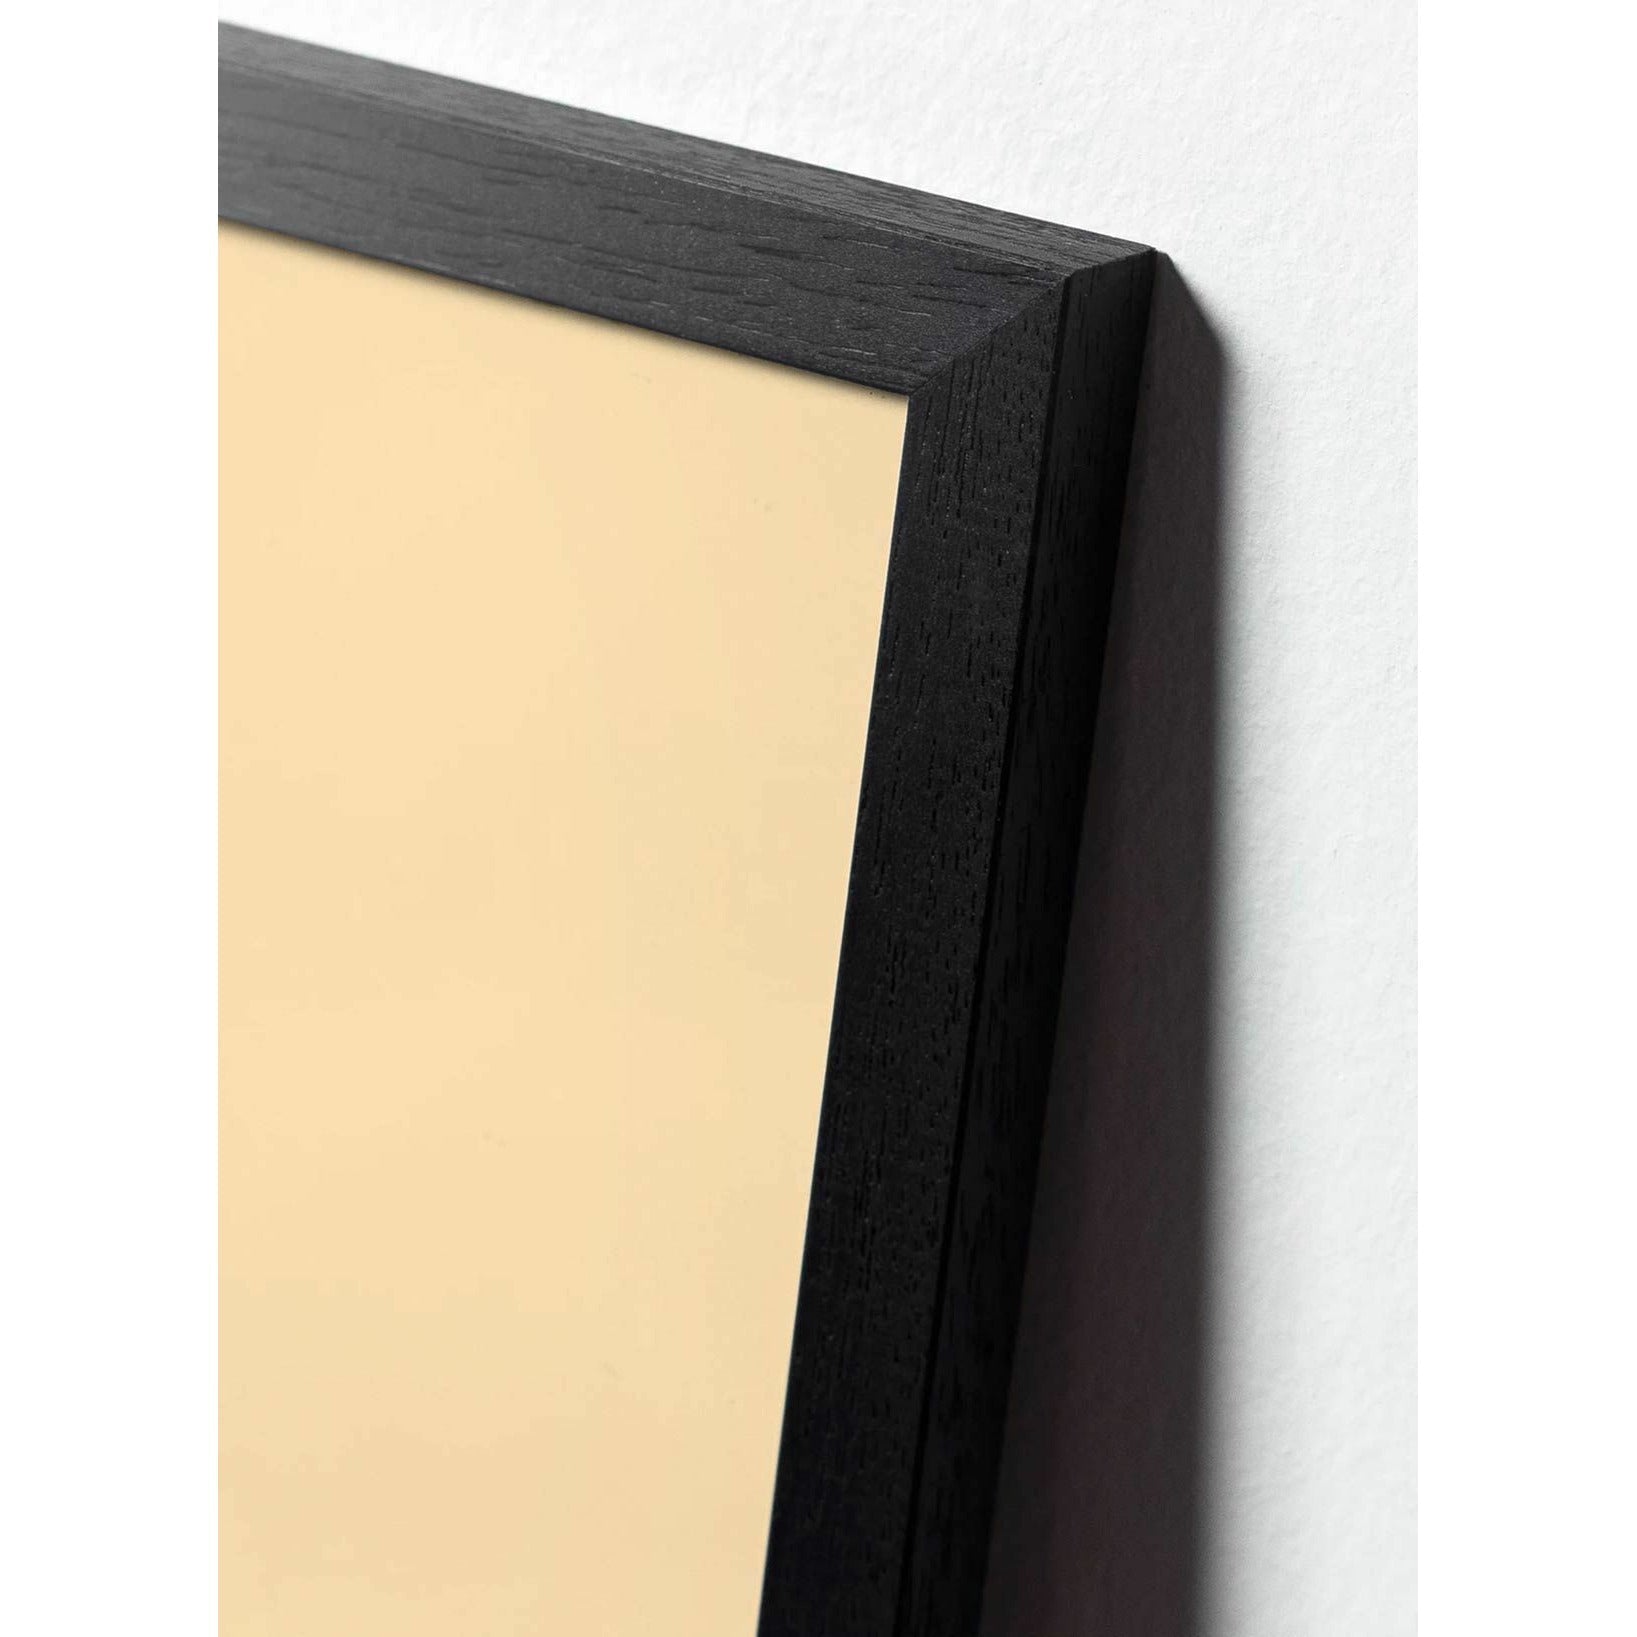 brainchild Swan Classic juliste, kehys mustalla lakattuun puuhun 50x70 cm, musta/musta tausta